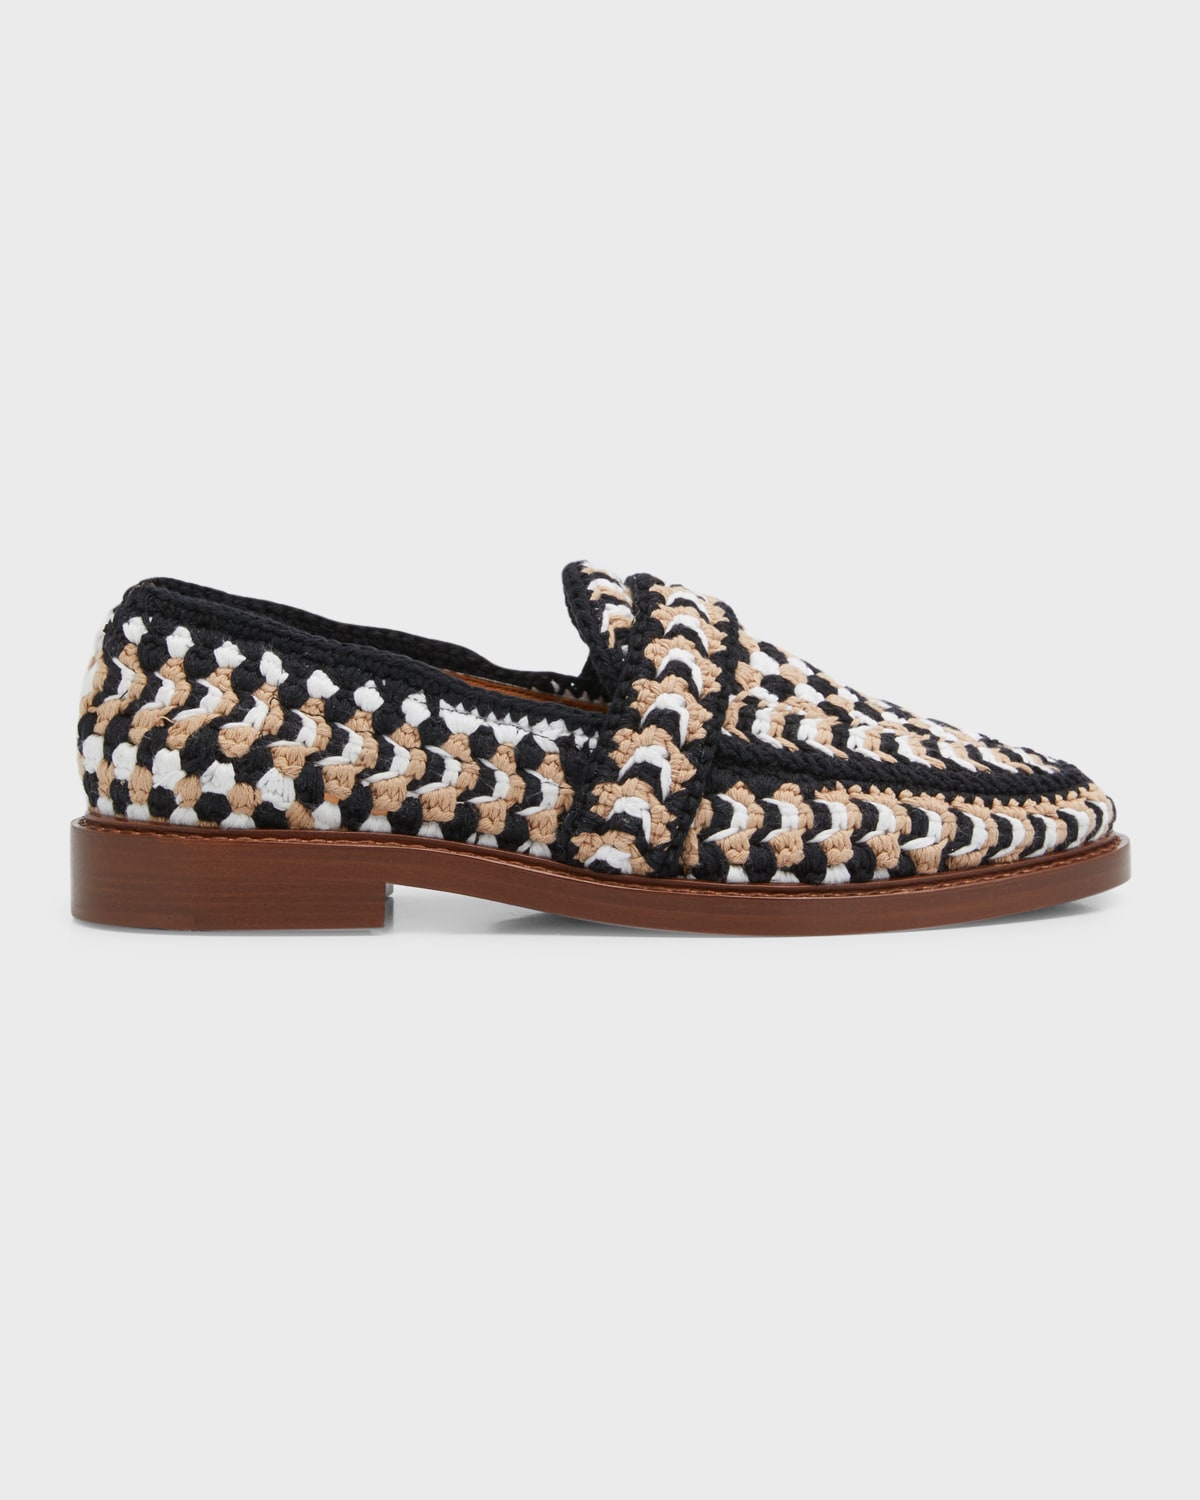 Kayla Crochet Slip-On Loafers